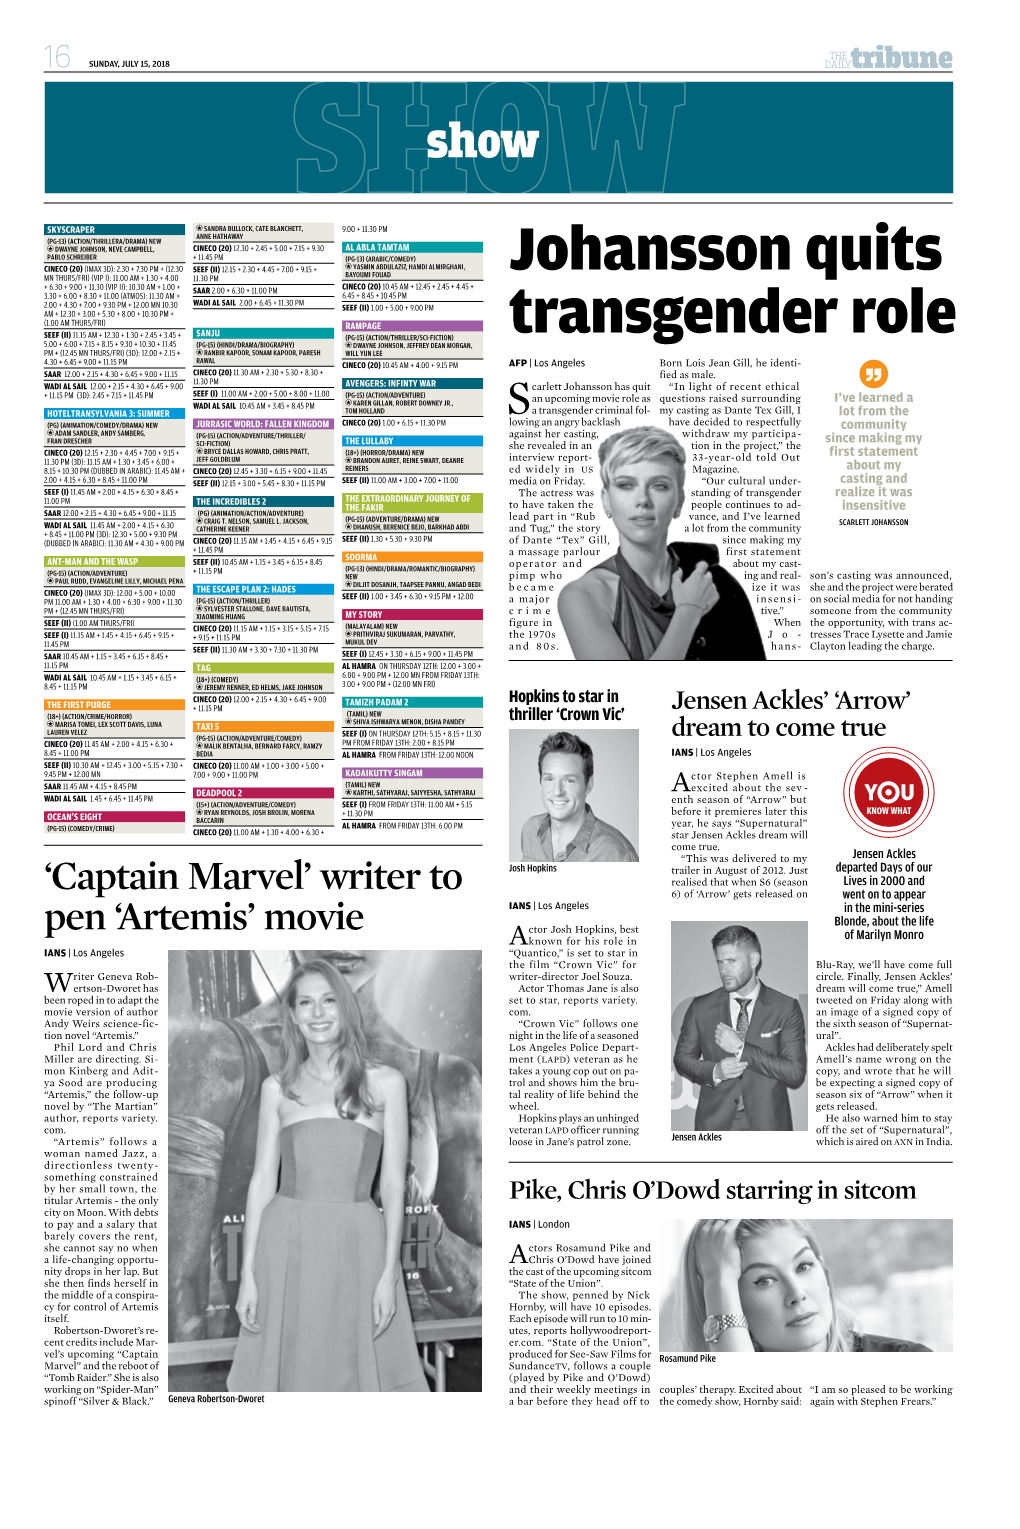 Johansson Quits Transgender Role